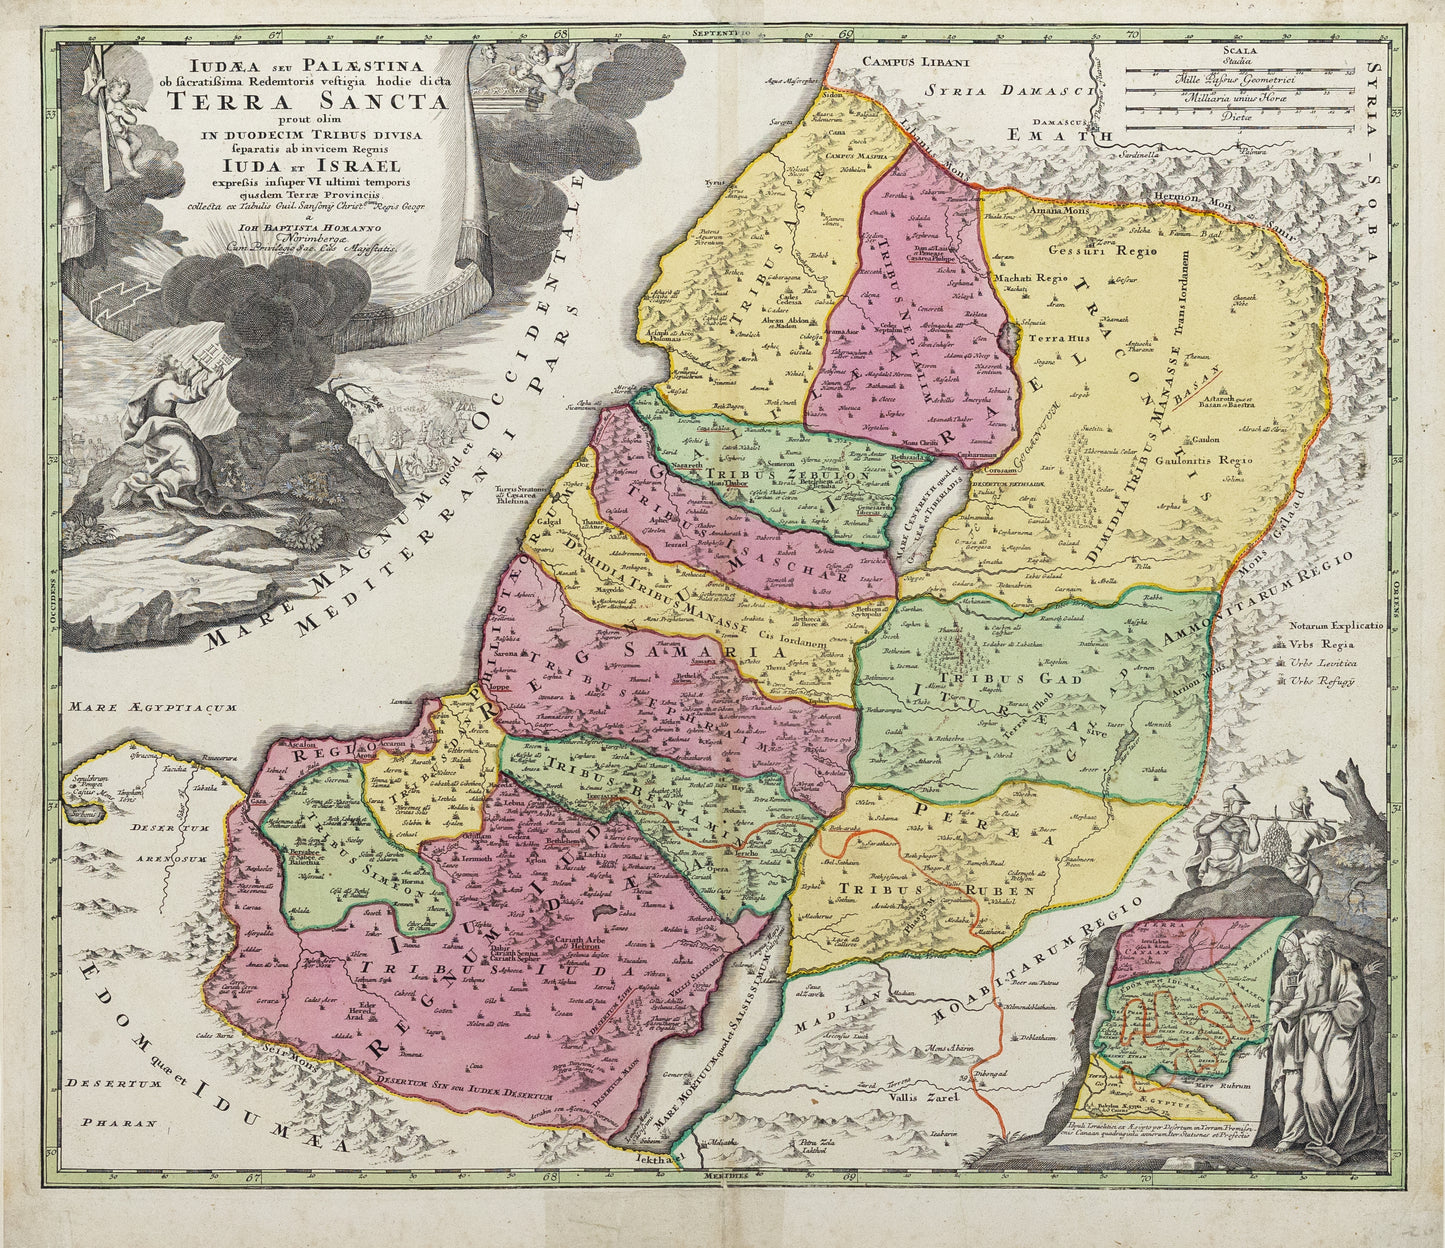 Homann, Johann Baptist. Judea Seu Palestina Terra Sancta. c. 1707